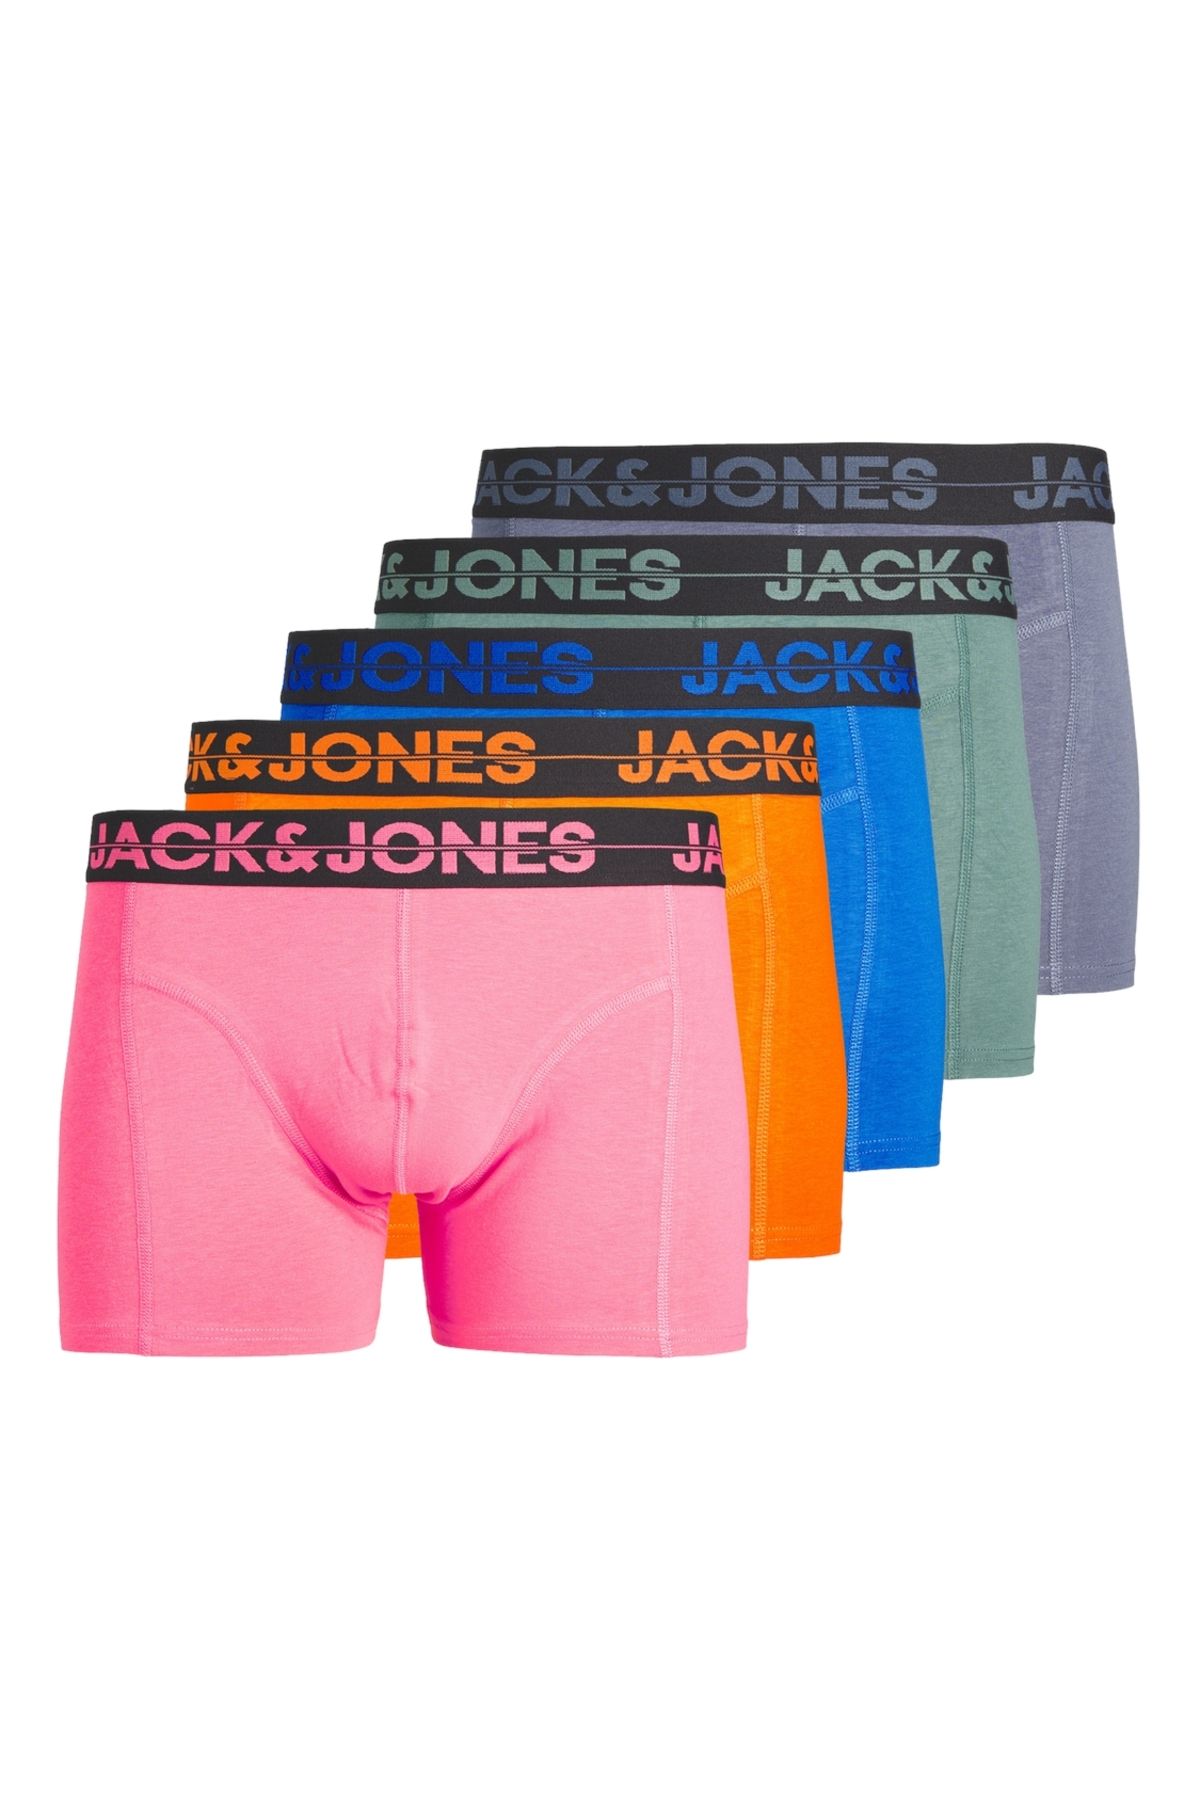 Jack & Jones Jack Jones Jacseth Solıd Trunks 5 Pack Box Pls Erkek Mavi Büyük Beden Boxer 12257404-07